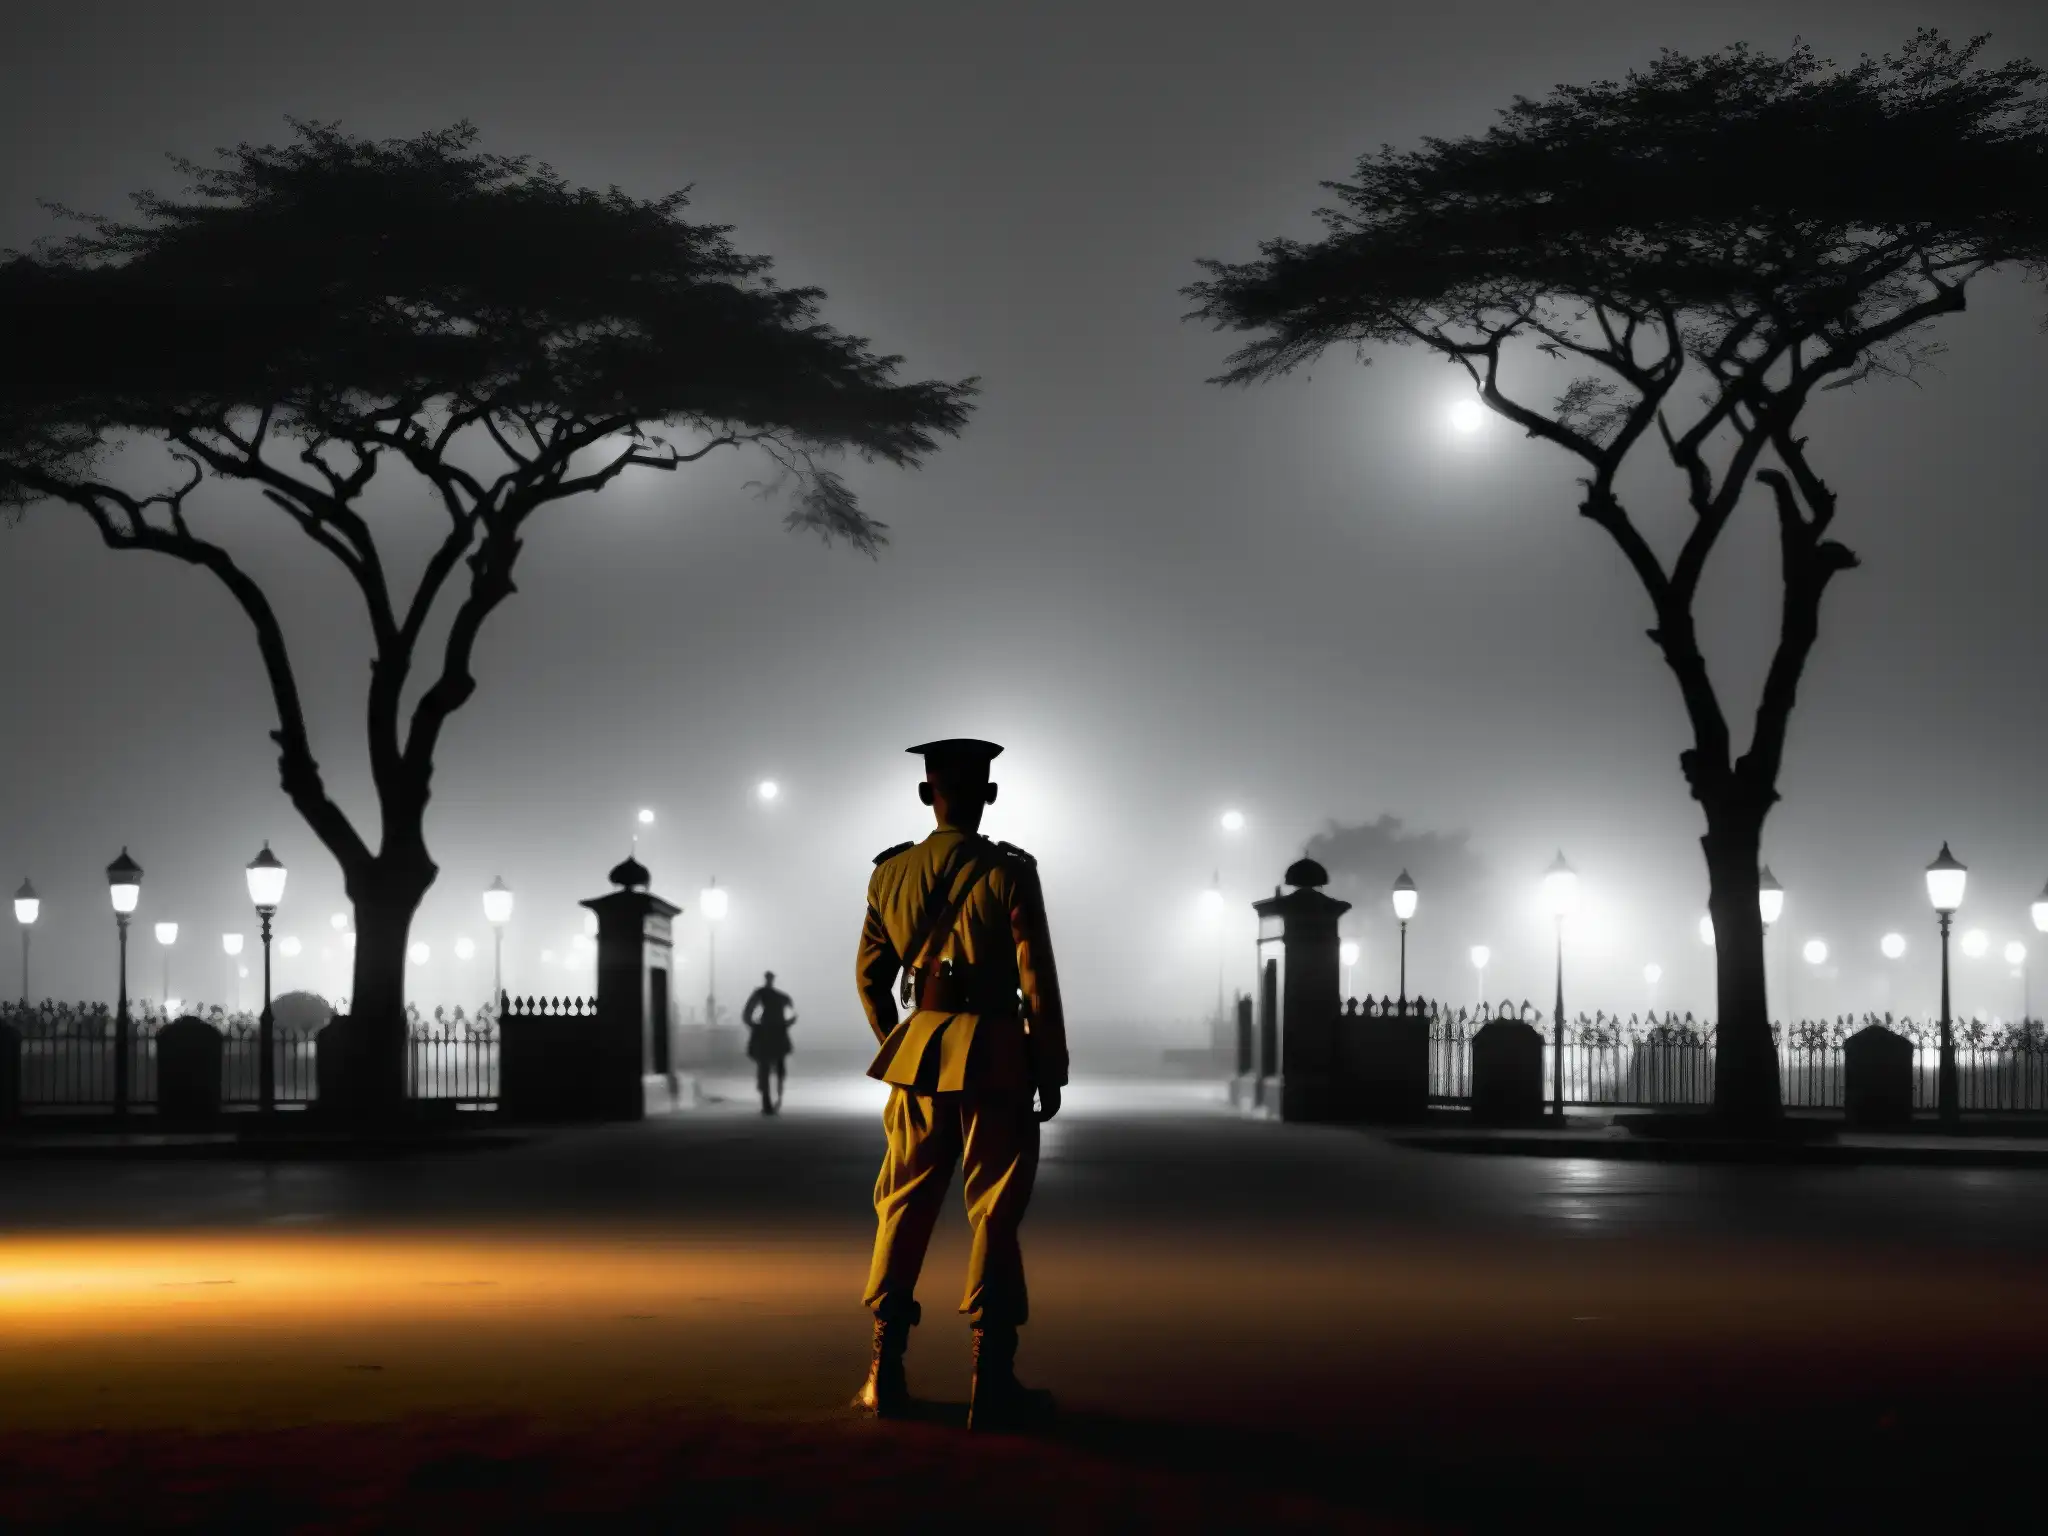 El espíritu del soldado en Delhi Cantonment: una atmósfera misteriosa y solemne en blanco y negro